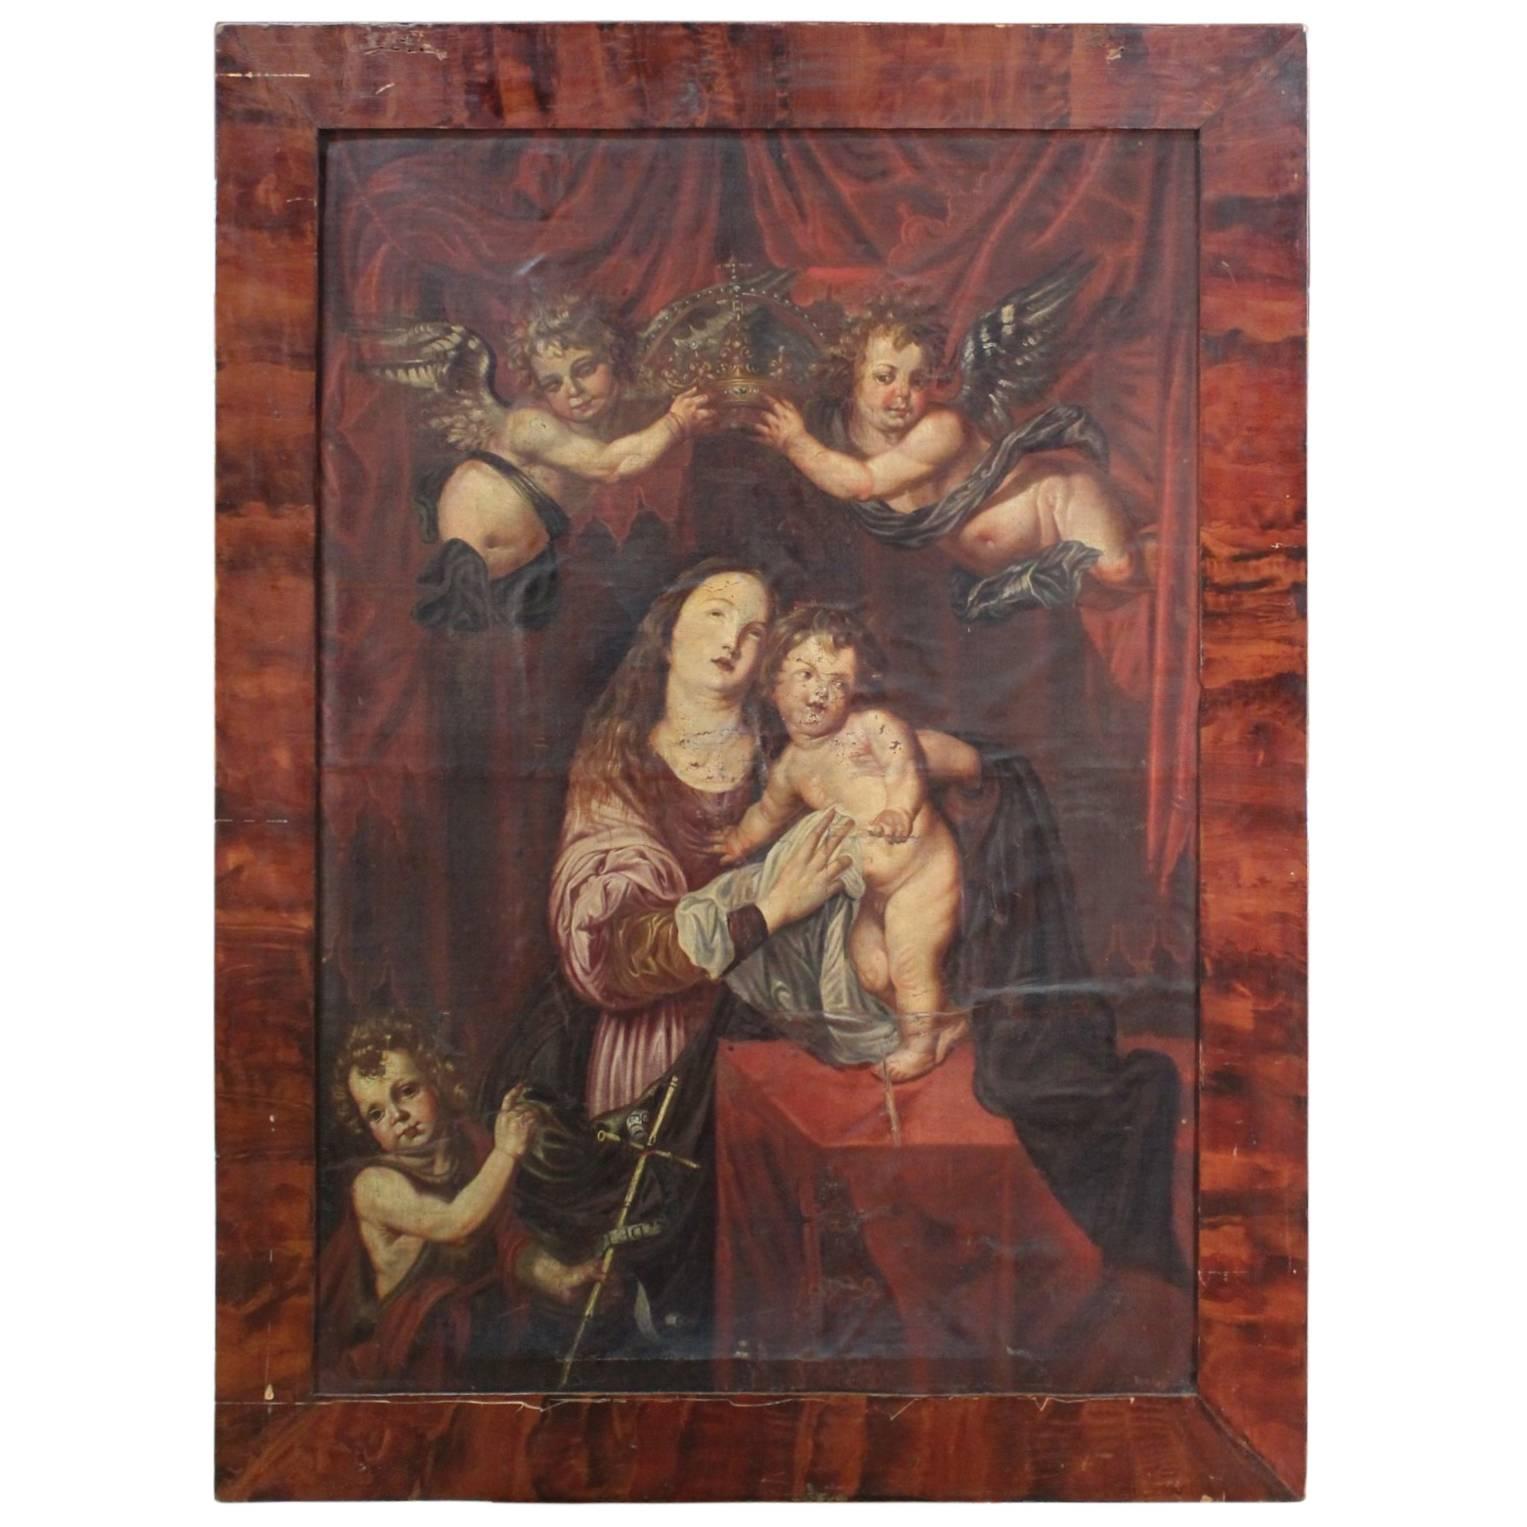 Italian Religious Painting Oil on Canvas Coronation of Virgin 18th Century